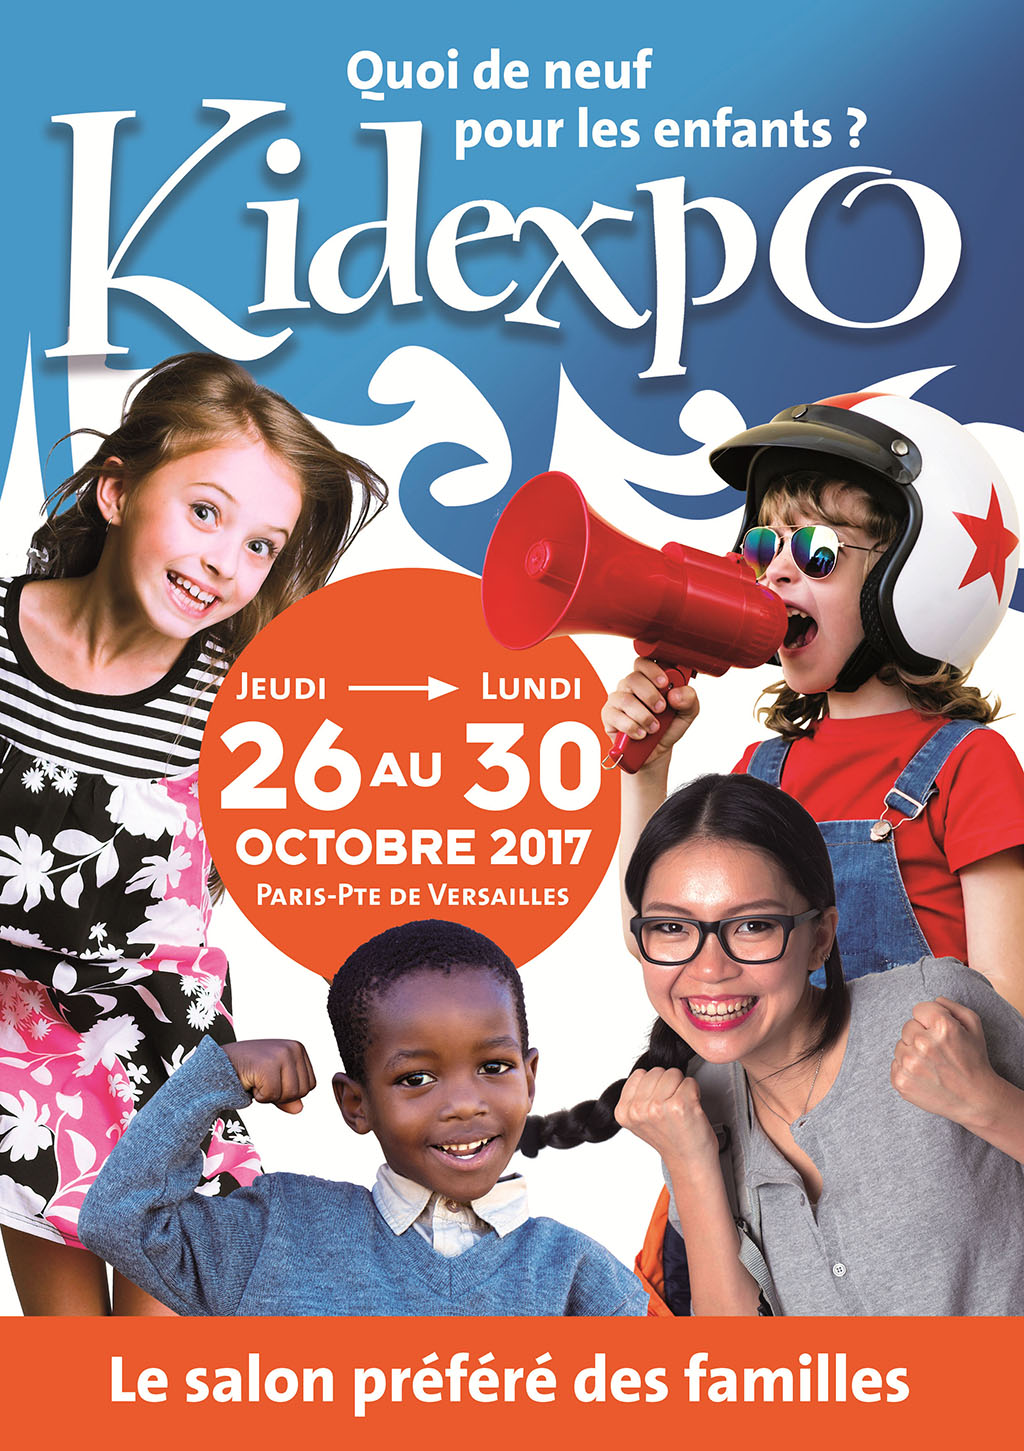 Kidexpo 2017